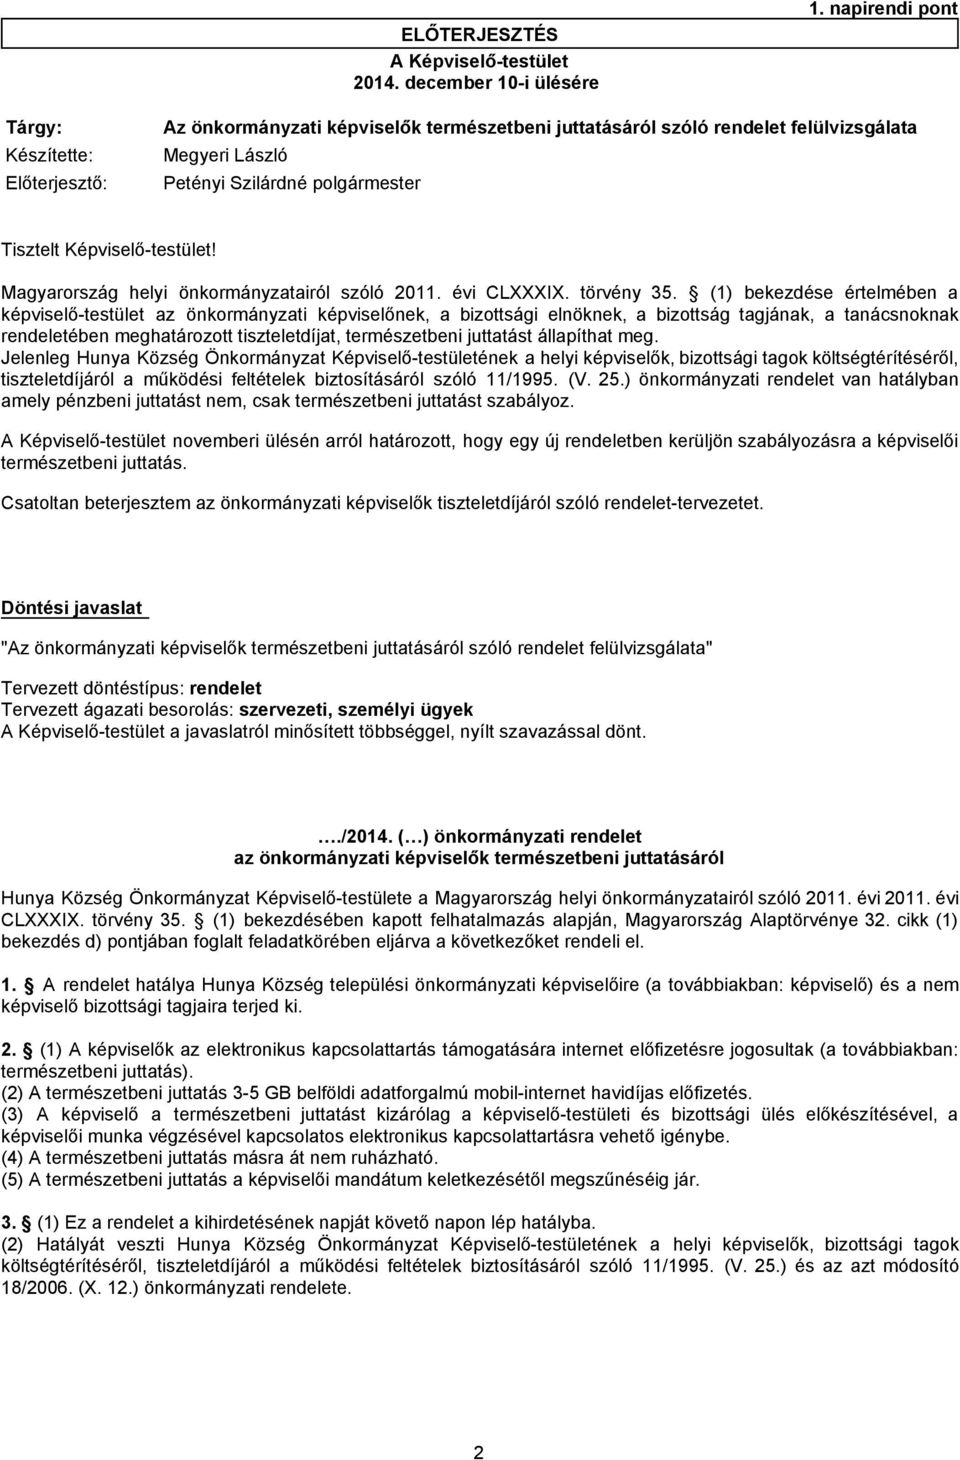 Képviselő-testület! Magyarország helyi önkormányzatairól szóló 2011. évi CLXXXIX. törvény 35.